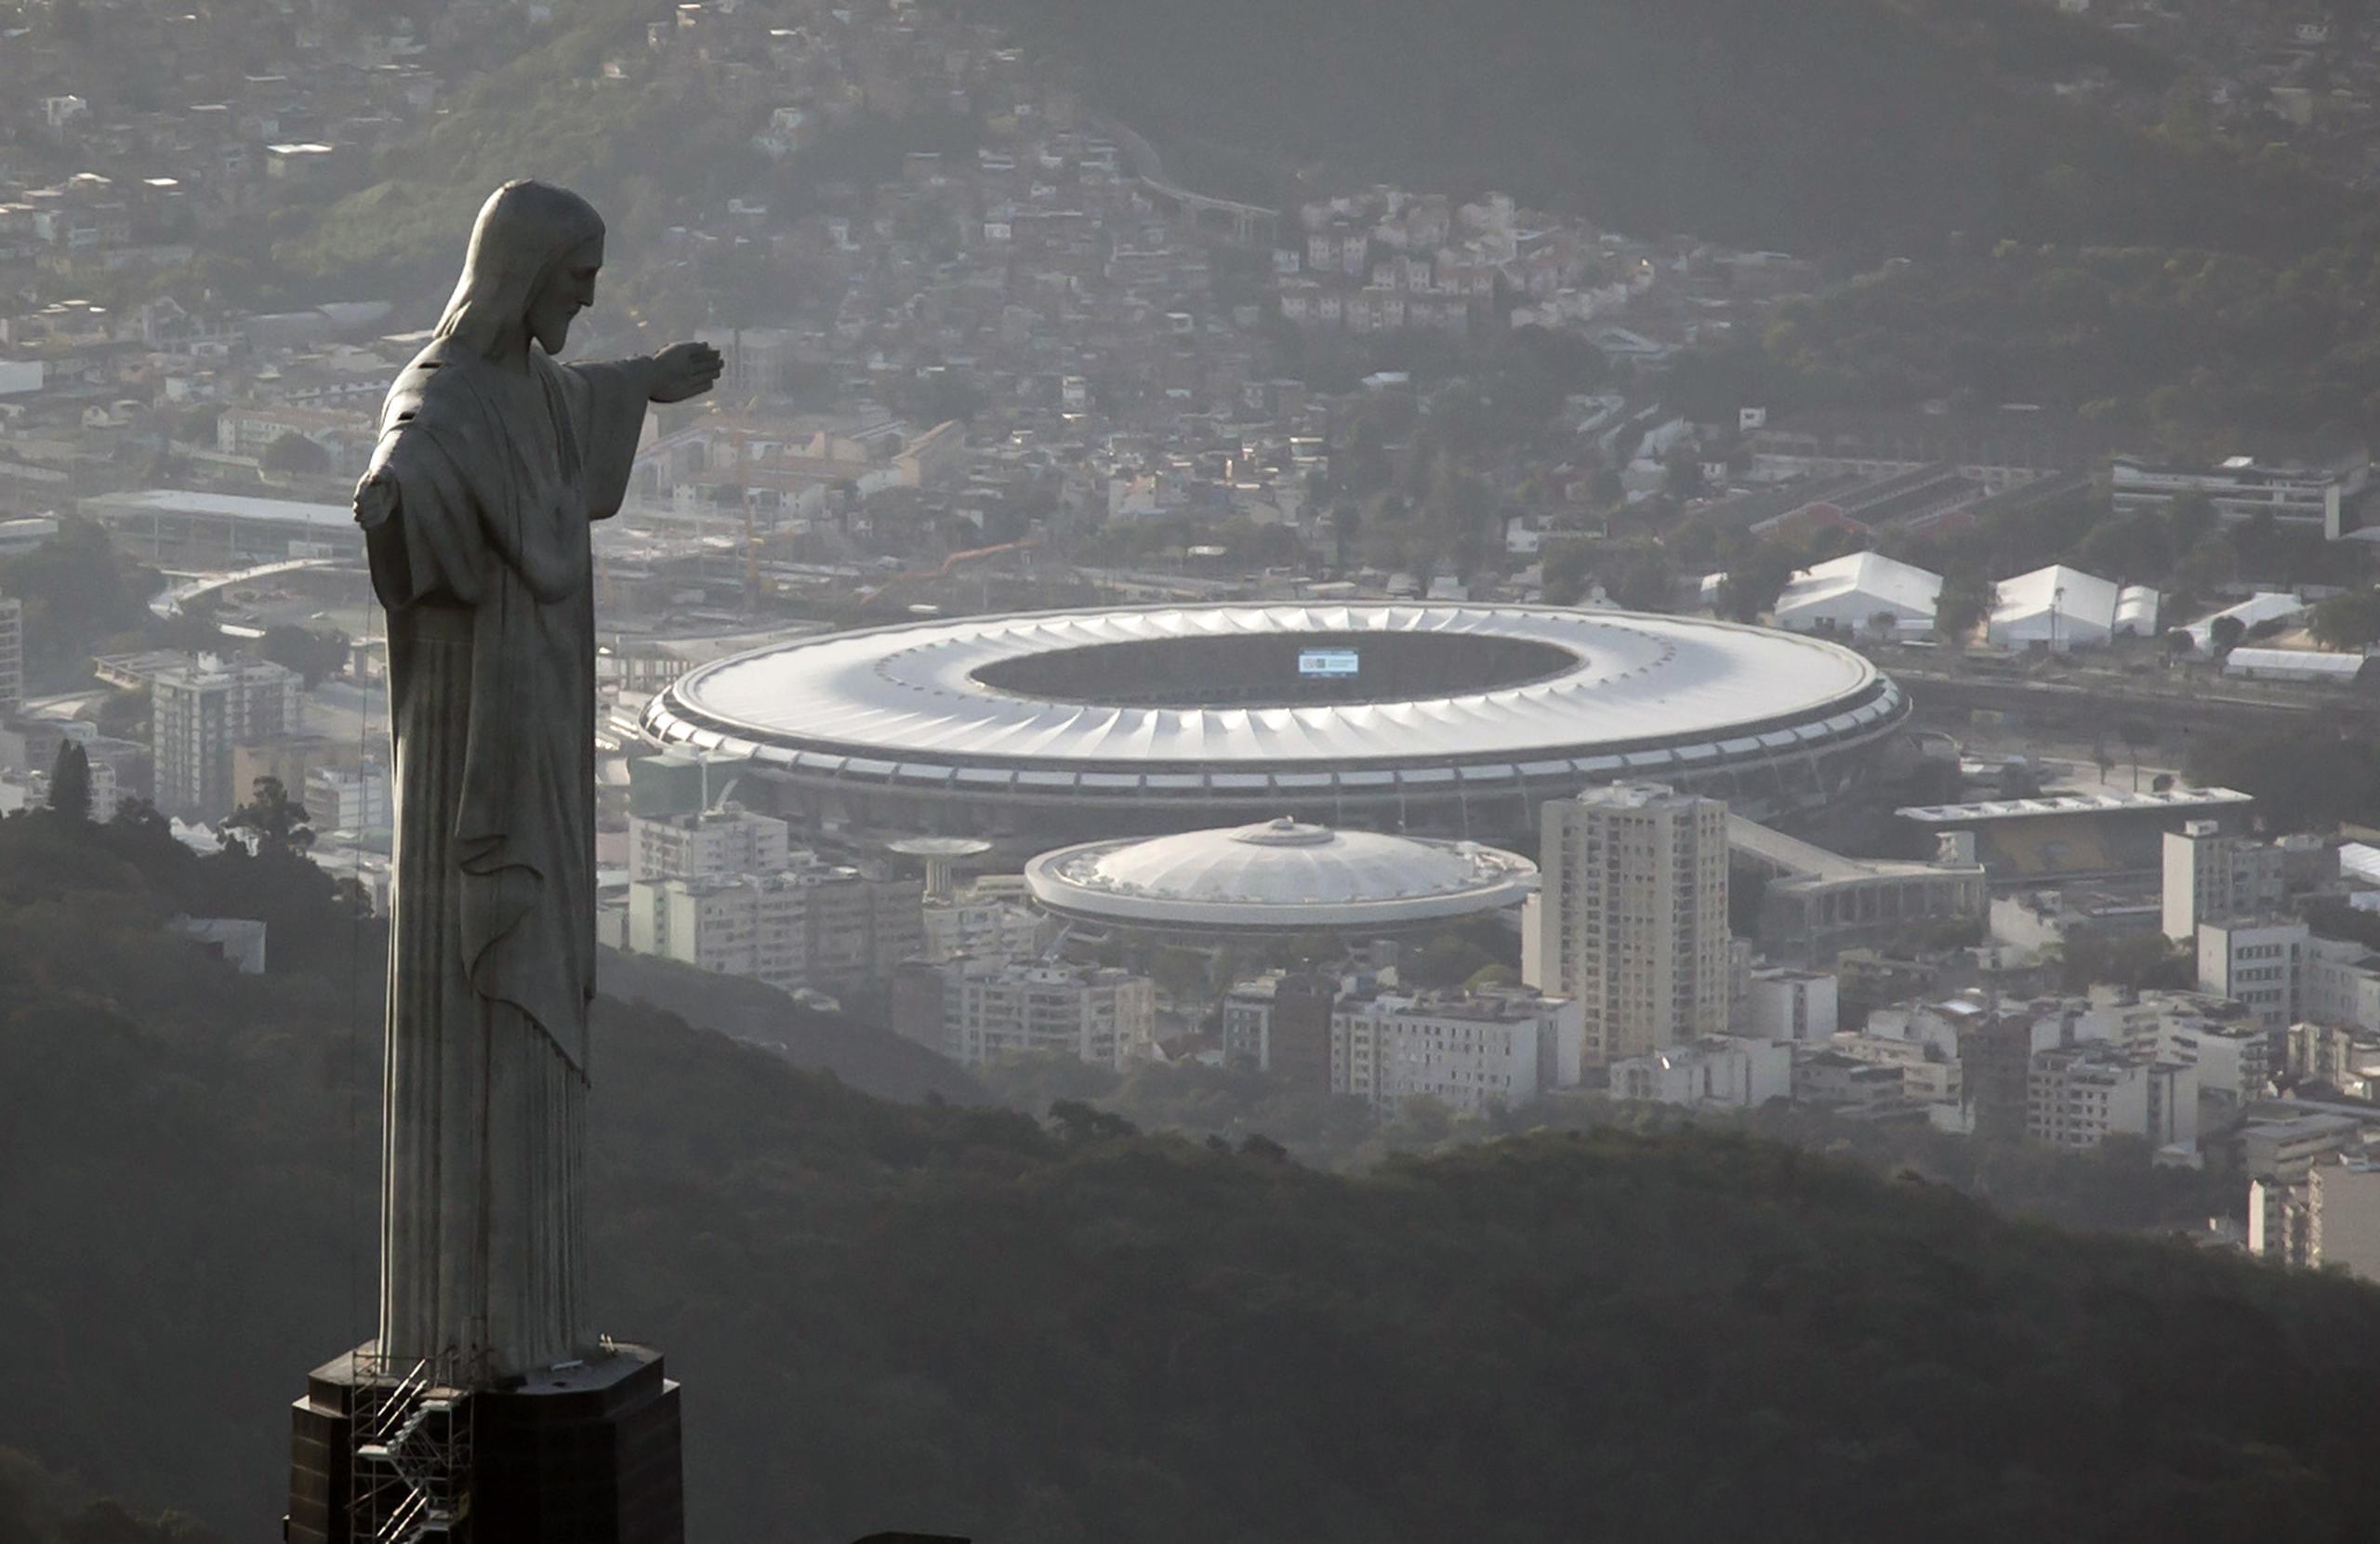 La final de esta noche en el Maracaná de Rio de Janeiro enfrenta a Brasil y Argentina.